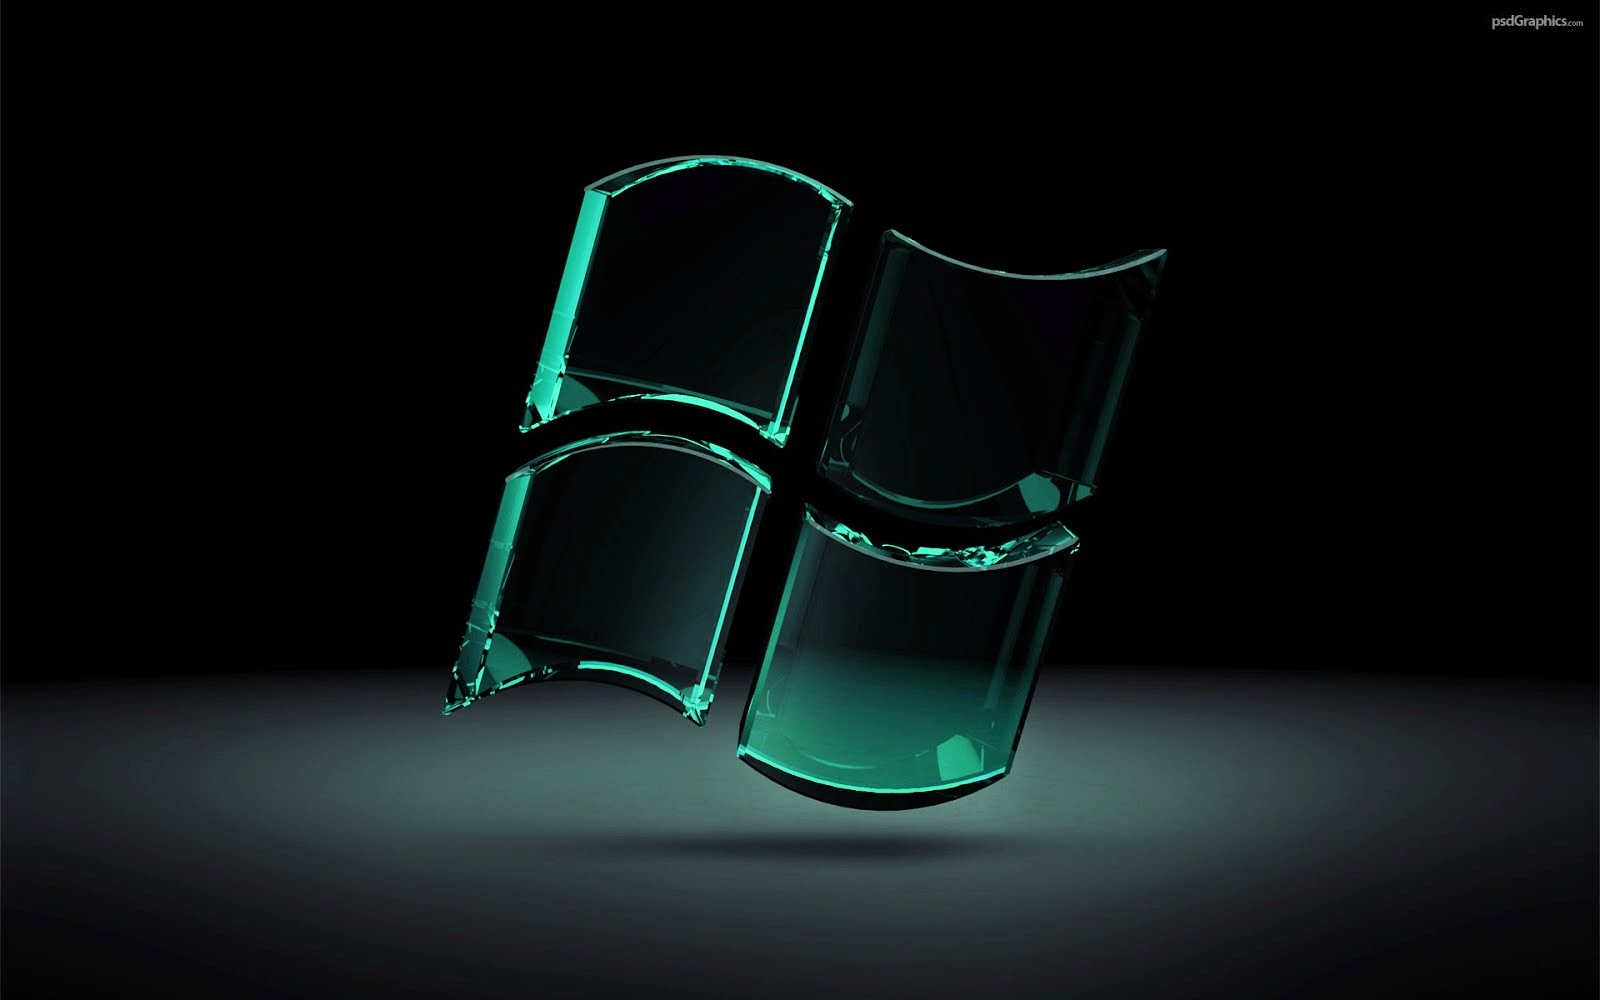 배경 노트북 keren,초록,투명한 재료,빛,정물 사진,의자